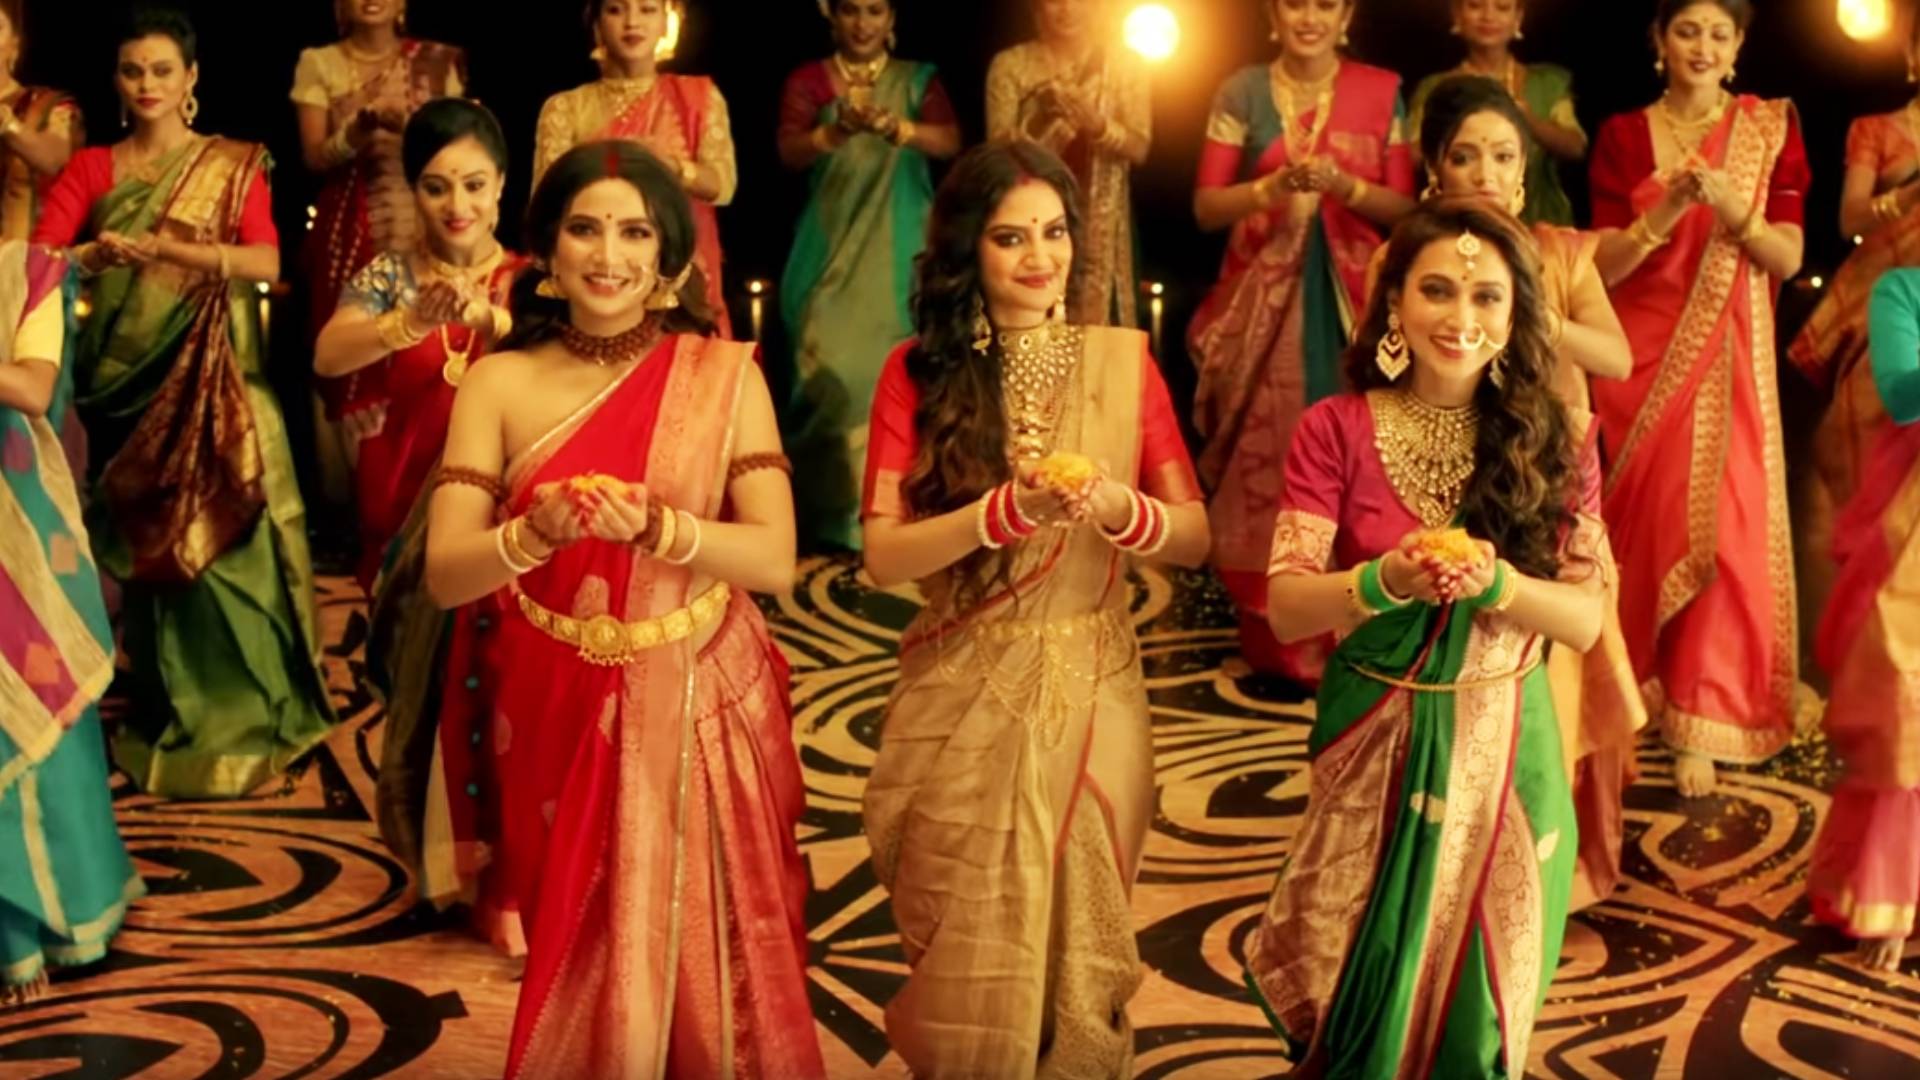 TMC सांसद नुसरत जहां-मिमी चक्रवर्ती ने दुर्गा पूजा से पहले किया धमाकेदार डांस, वायरल हो रहा है ये भक्ति वीडियो